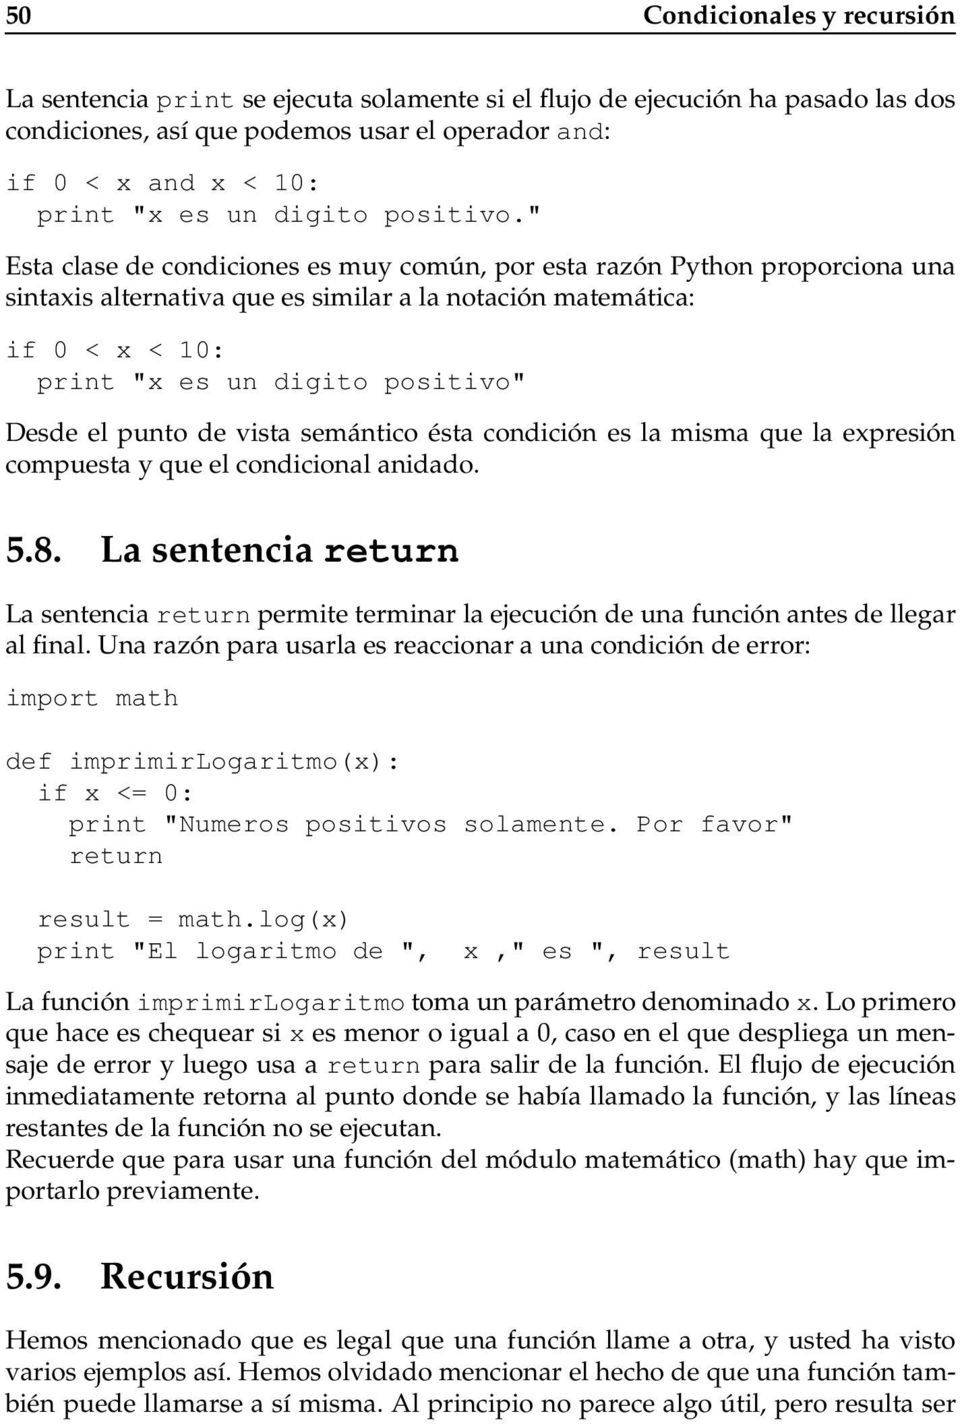 " Esta clase de condiciones es muy común, por esta razón Python proporciona una sintaxis alternativa que es similar a la notación matemática: if 0 < x < 10: print "x es un digito positivo" Desde el